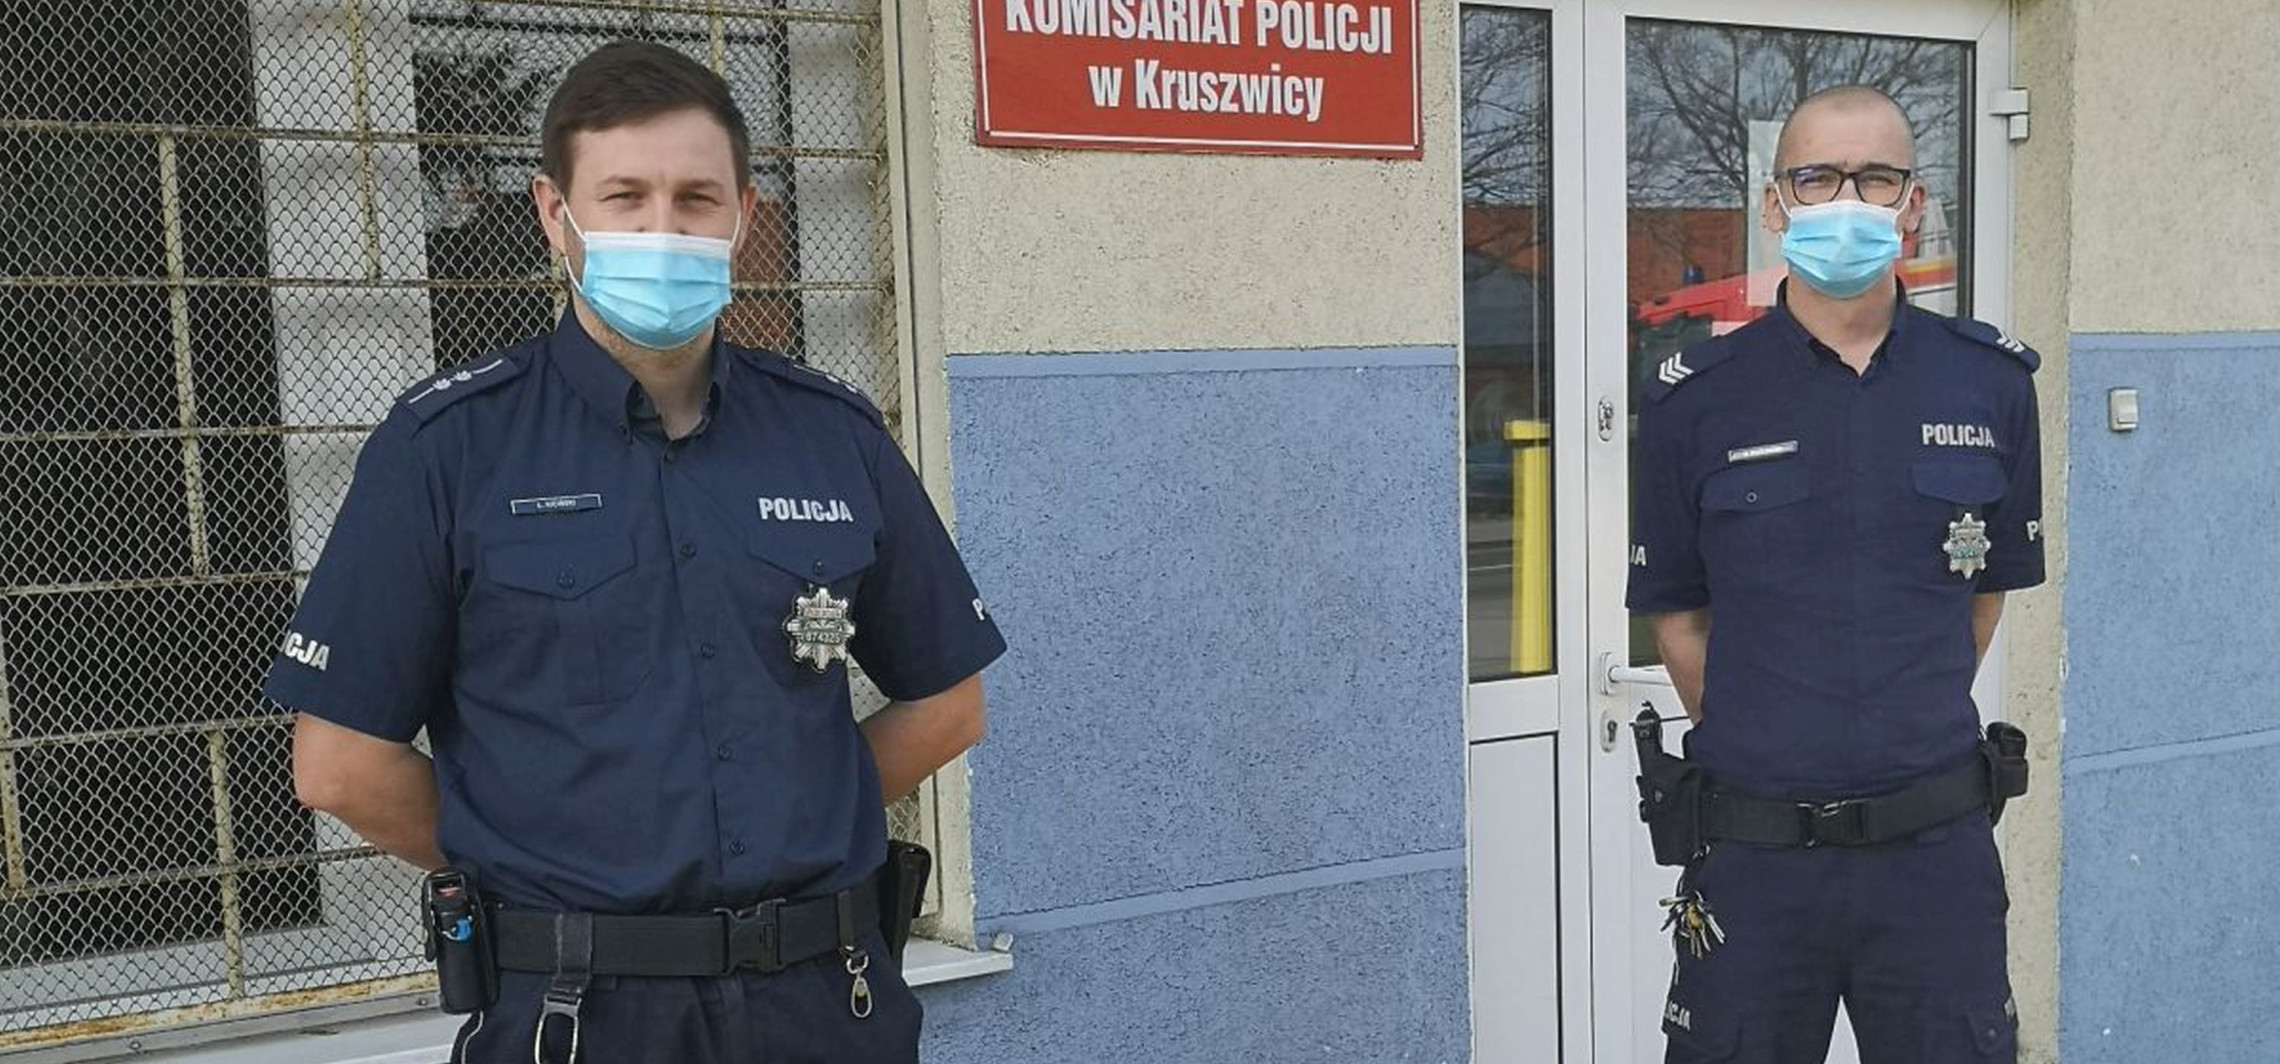 Kruszwica - Ozdrowieńcy z policji oddali osocze